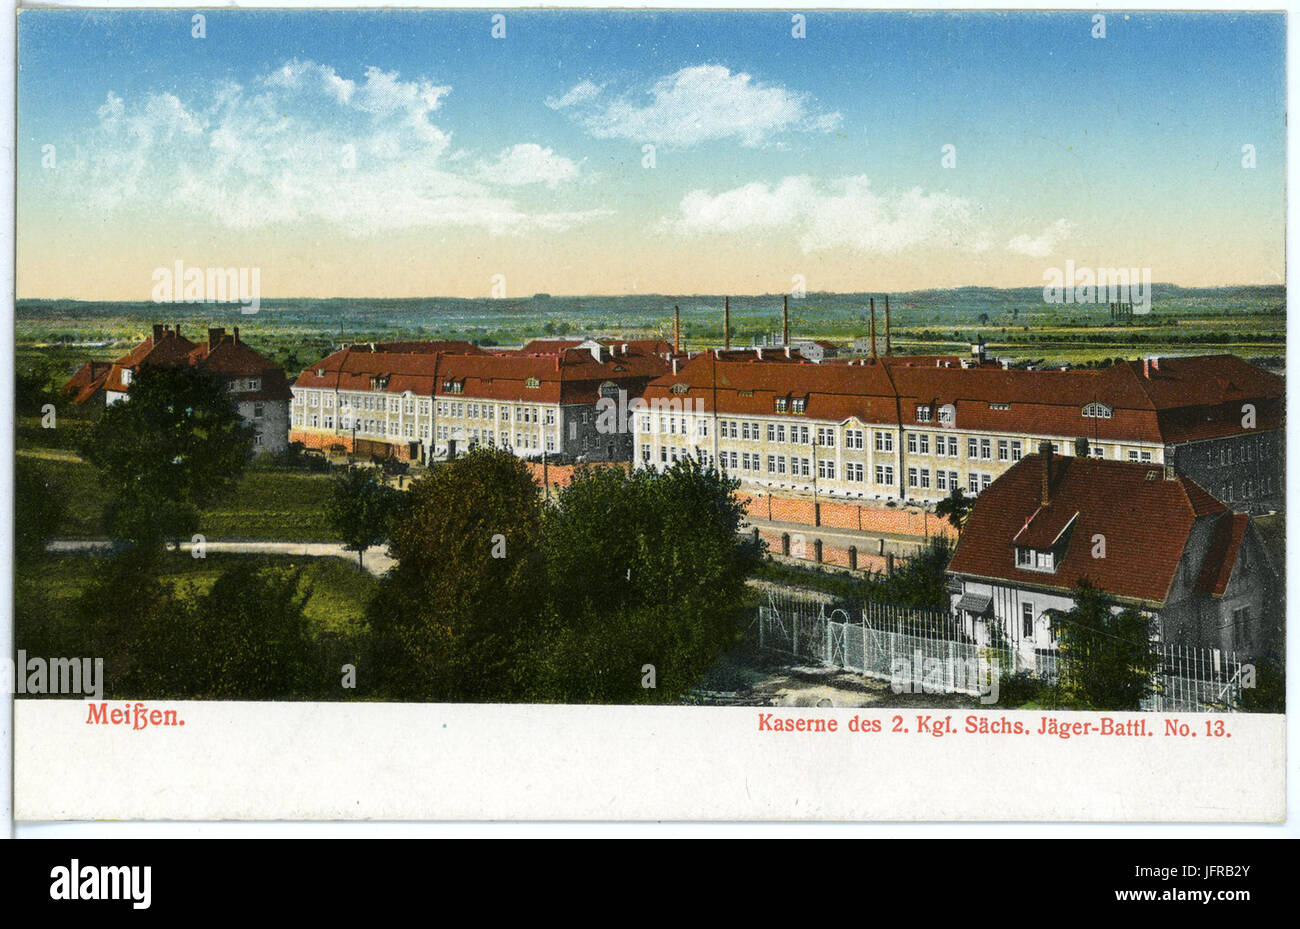 18383-Meißen-1914-Kaserne des 2. Königlich Sächsischen Jäger-Bataillon Nr. 13-Brück & Sohn Kunstverlag Stock Photo